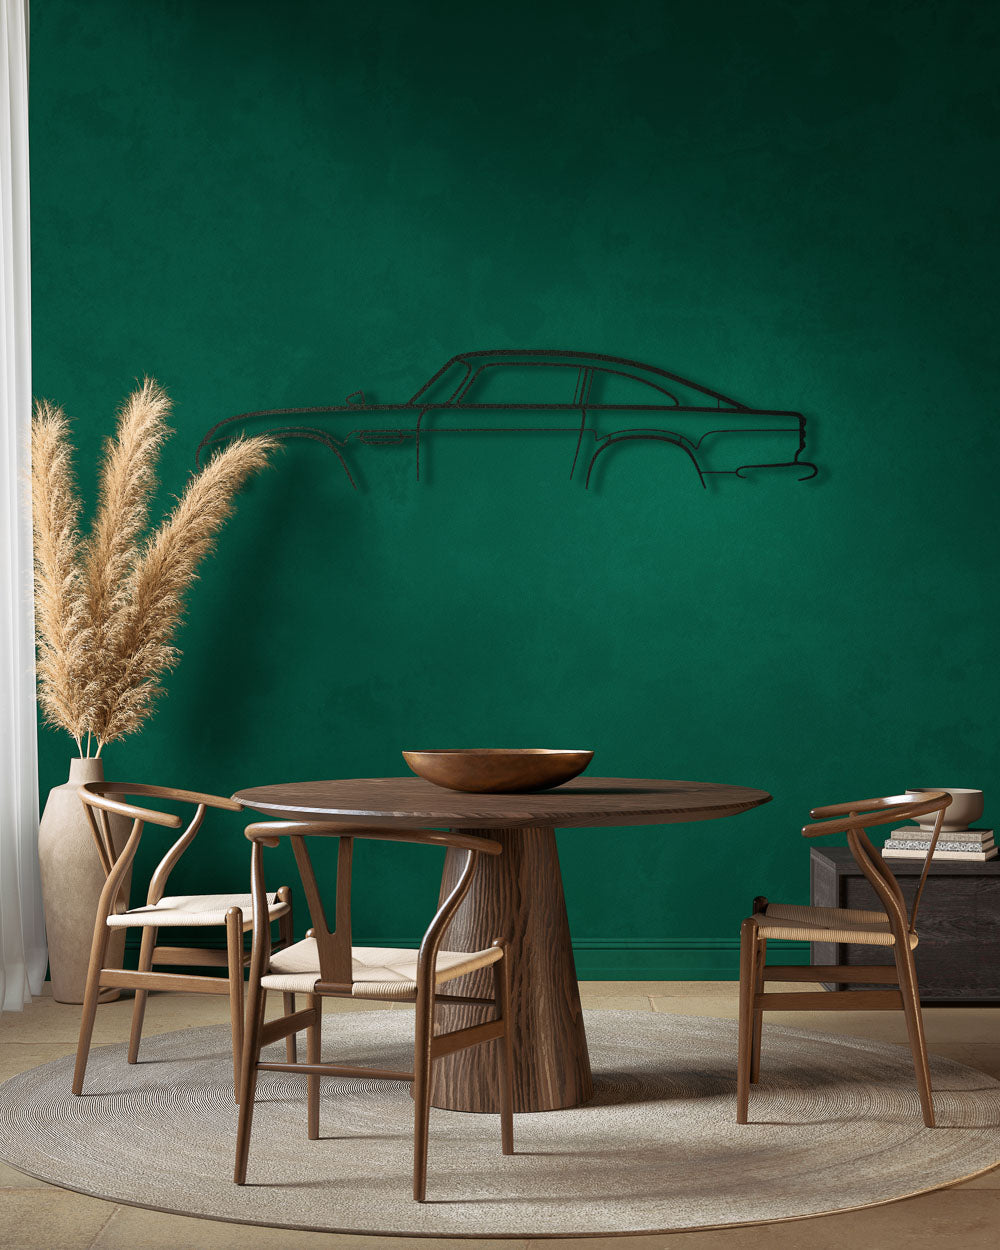 Nos - Aston Martin DB5 - Sagoma in Metallo di Design